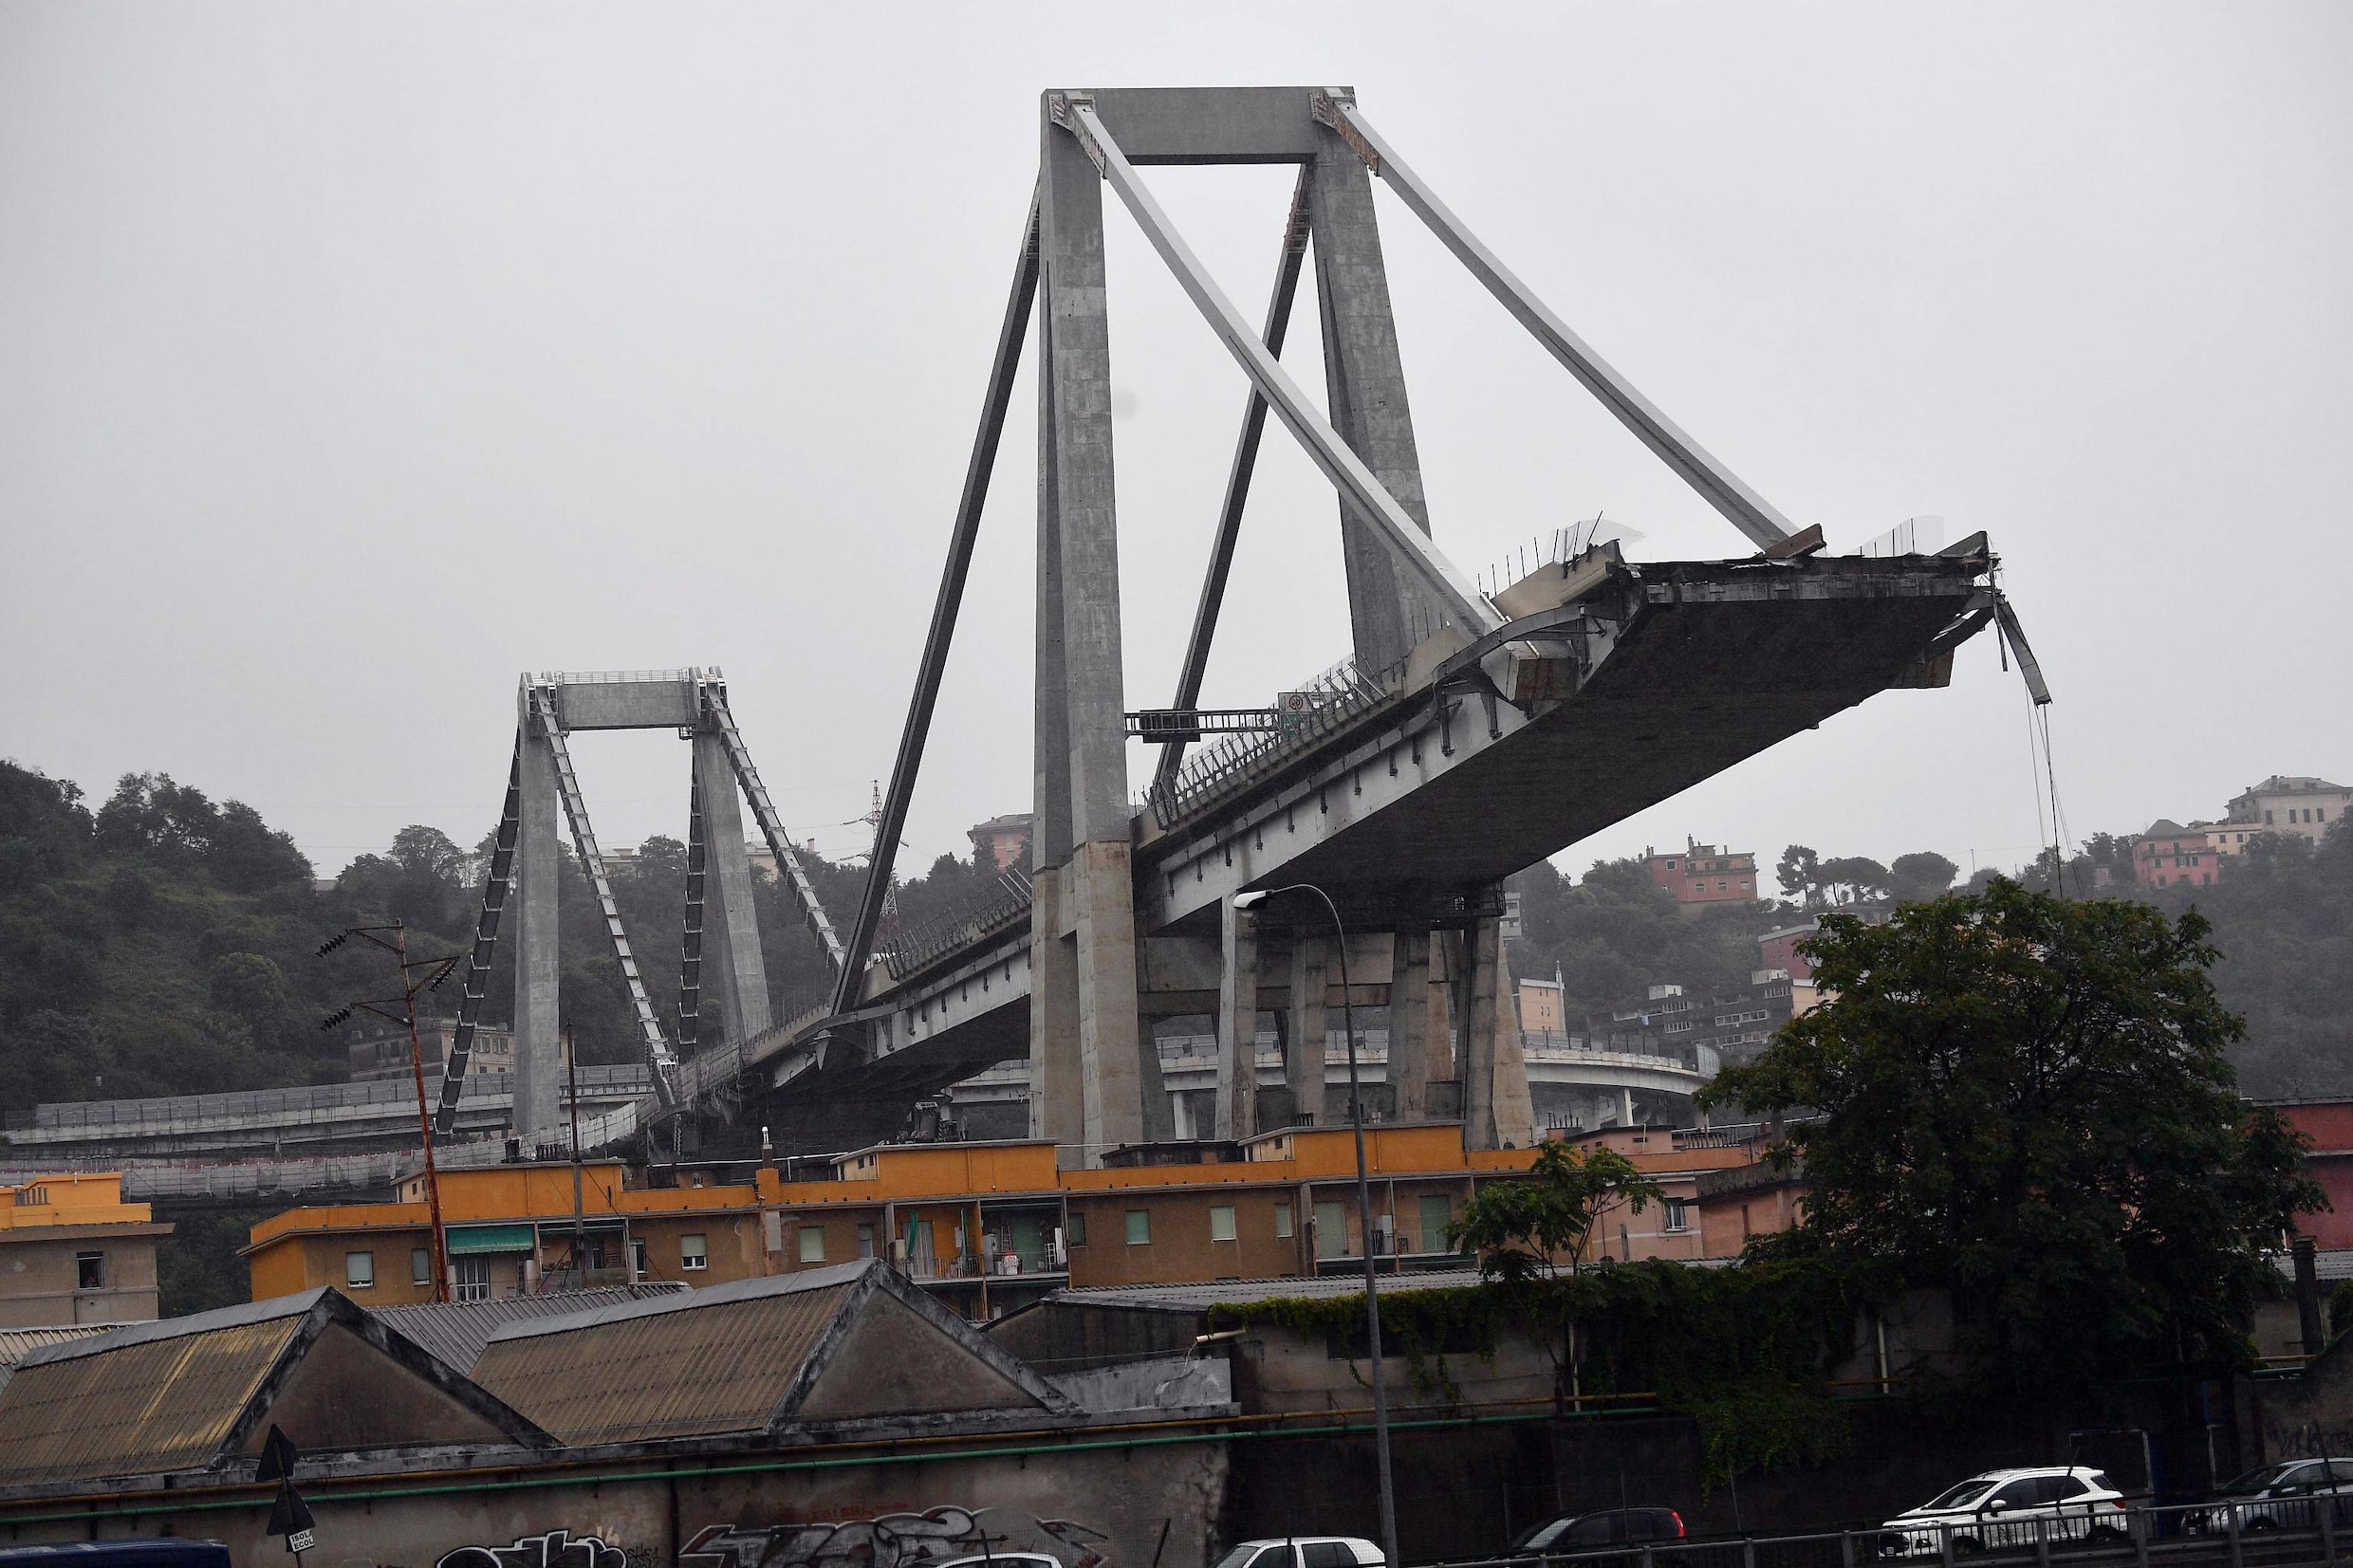 Minstens 42 doden na instorting omstreden brug nabij Genua